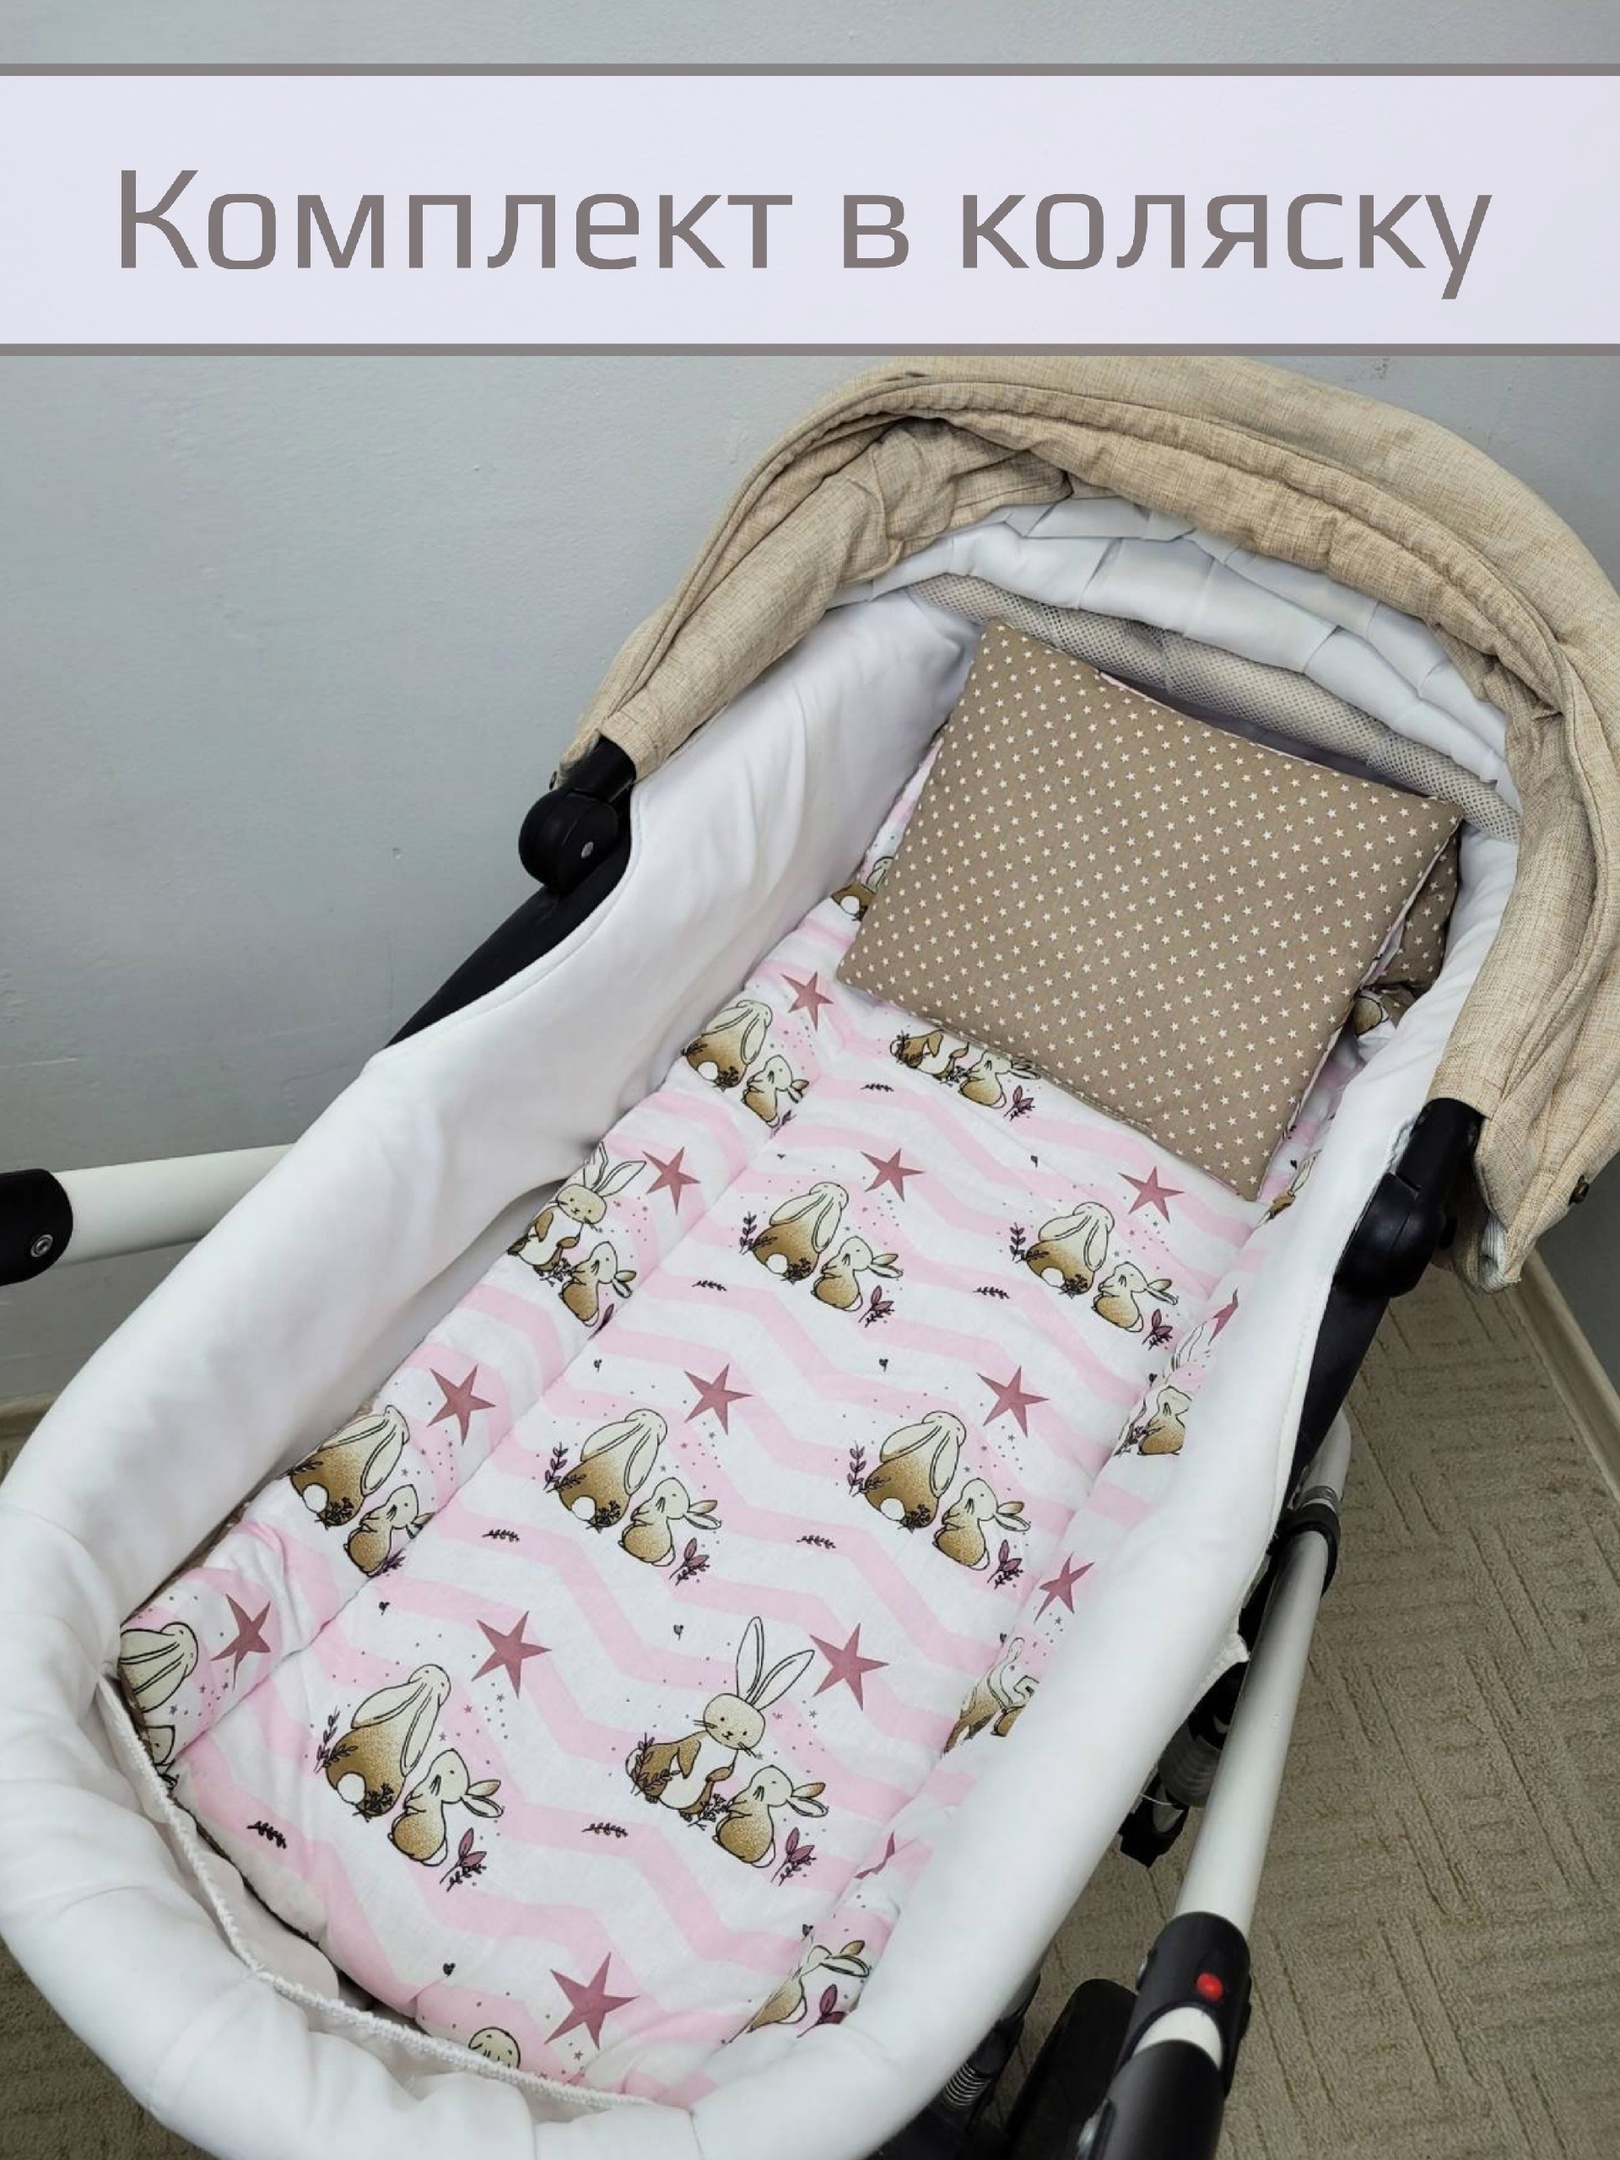 Комплект в коляску Матрасик, подушка Зайцы на розовых полосках 40*80см, подушка